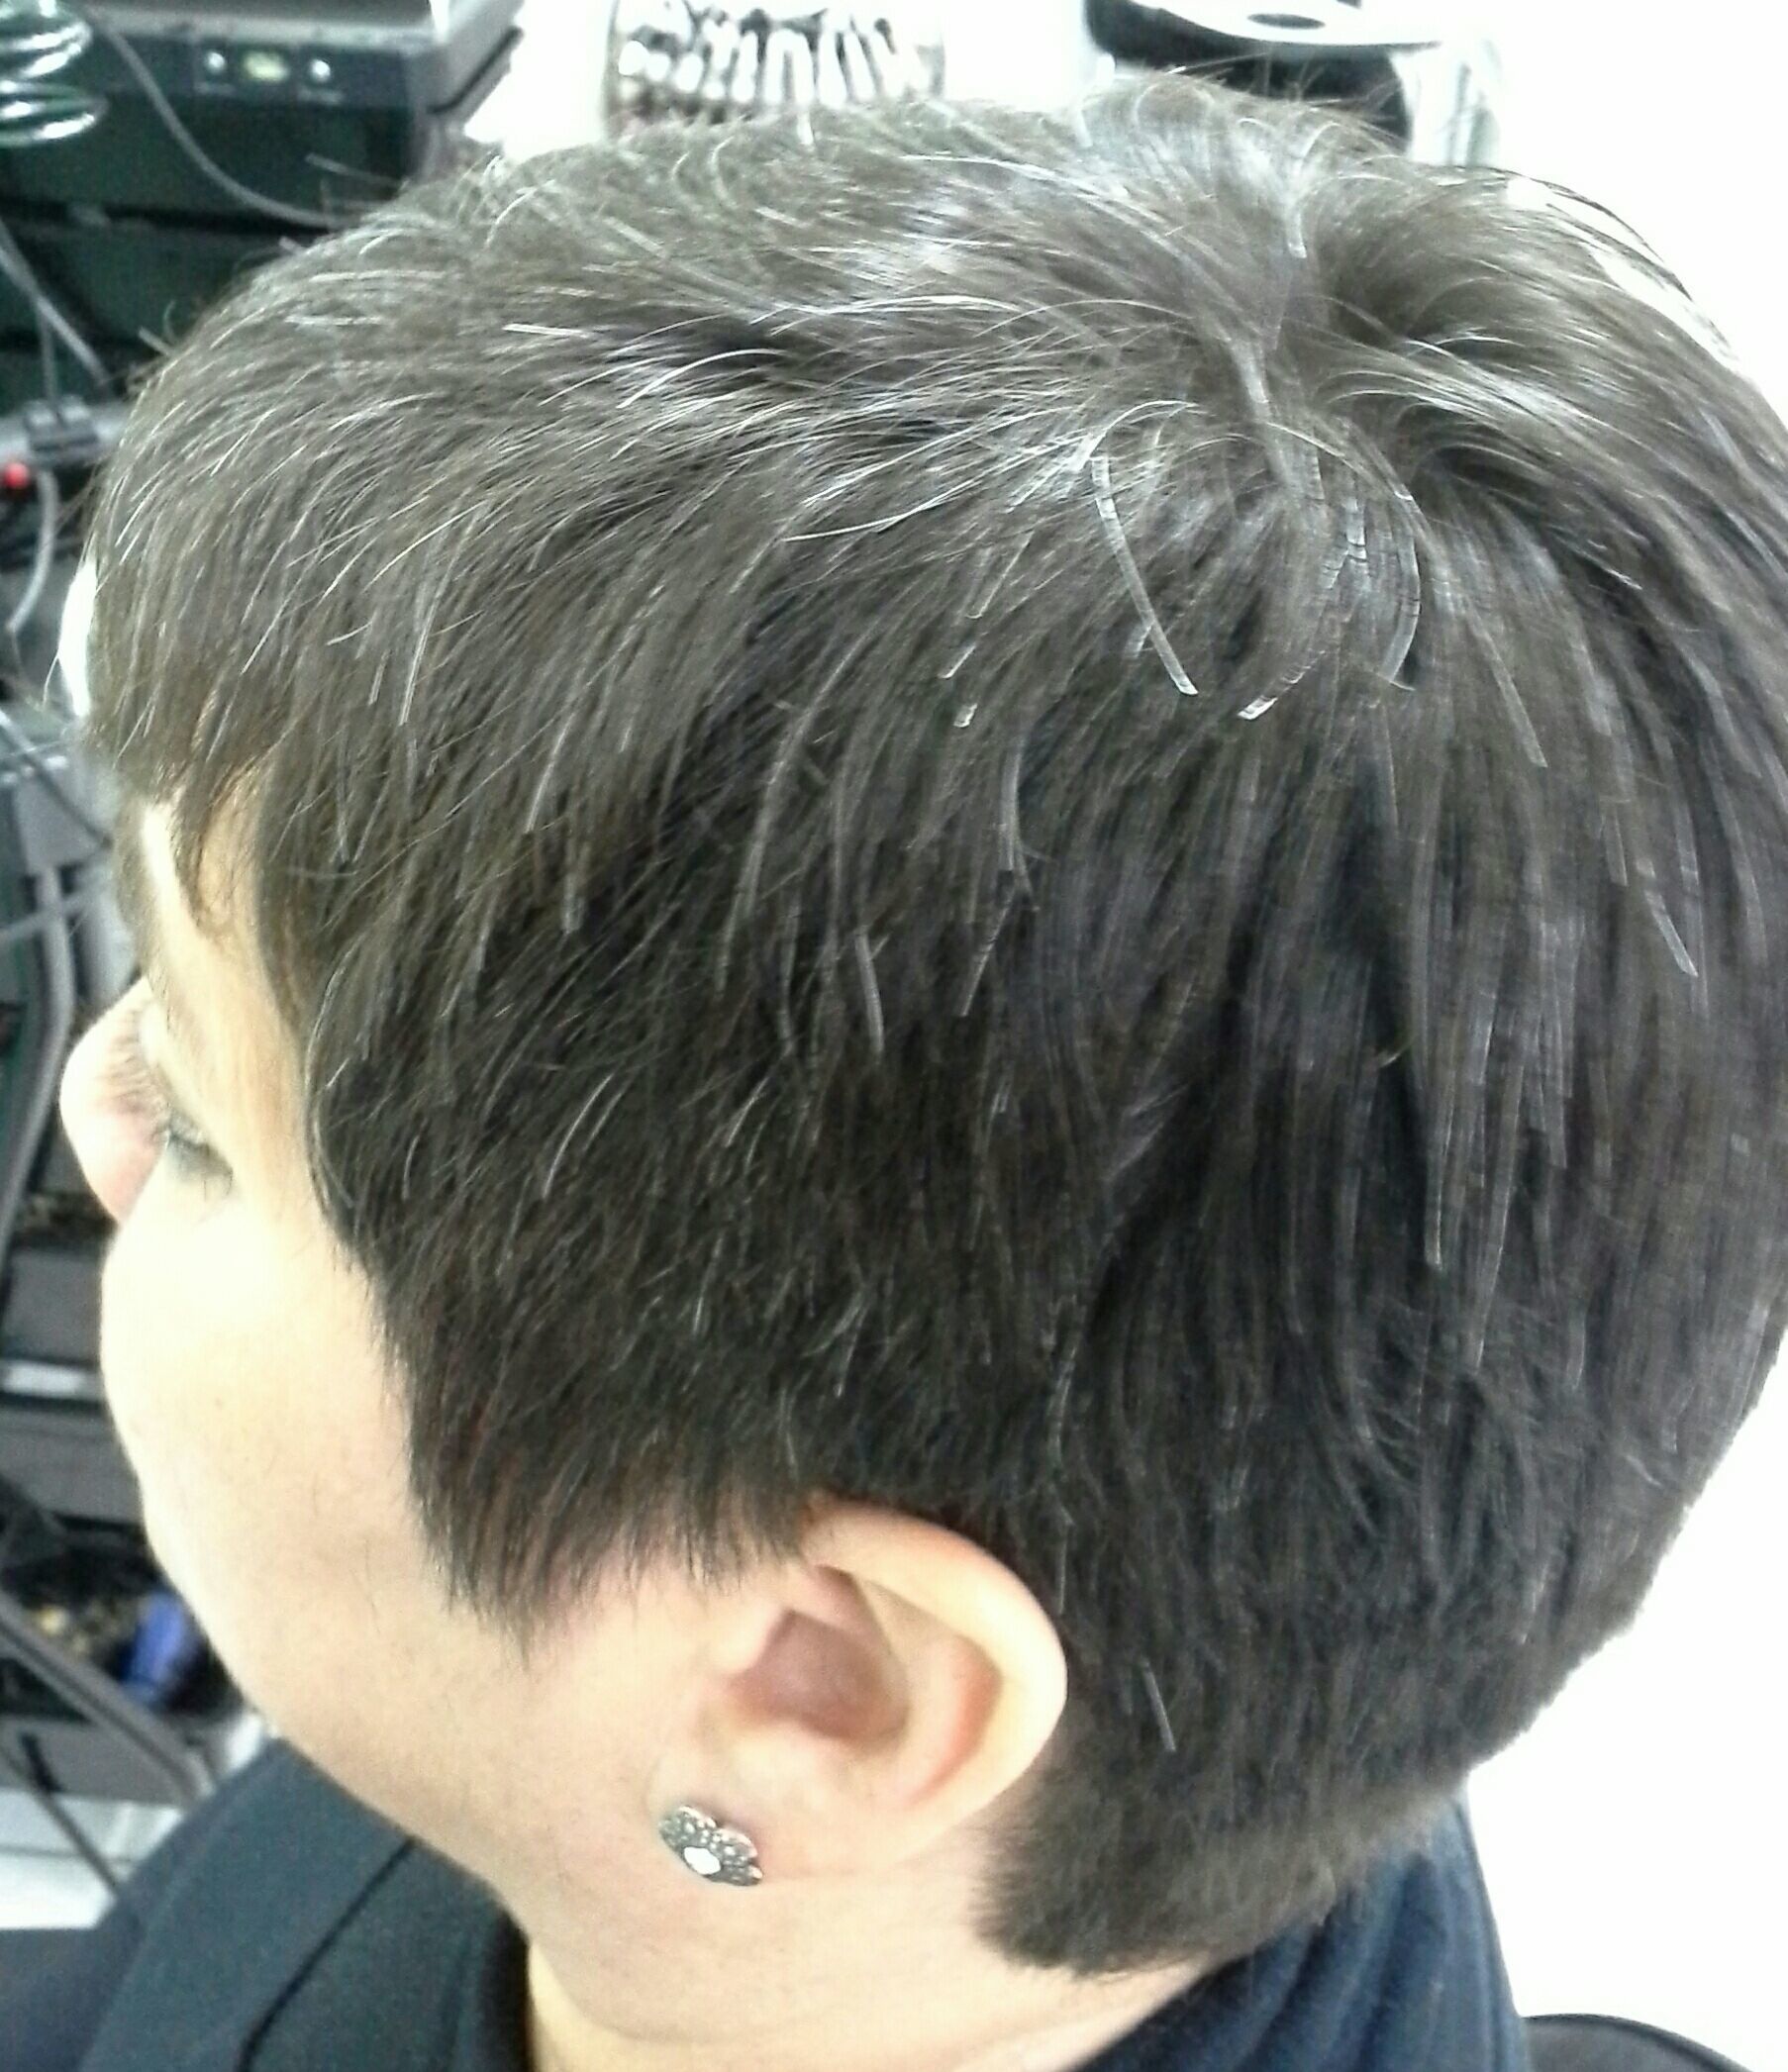 Cabelo, curto ,  atitude 
Profissional  .Vera Lúcia cabelo stylist / visagista cabeleireiro(a)